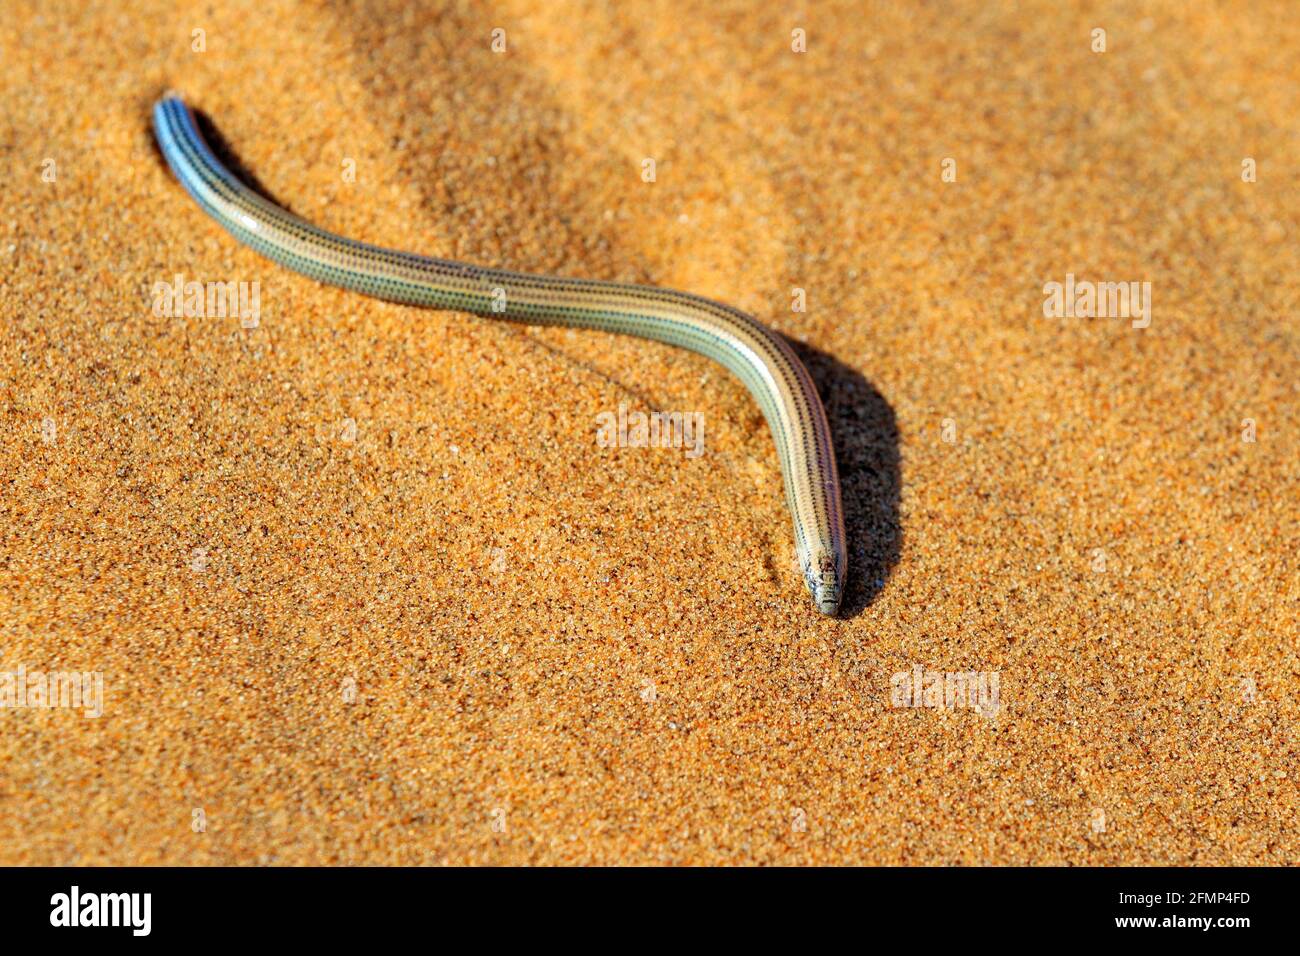 Le scinque de terriers de Fitzsimmons, Typlapontias brevipes, sur une dune de sable, Swakopmund, parc national de Dorob, Namibie. Animal du désert dans l'habitat, sable orange Banque D'Images